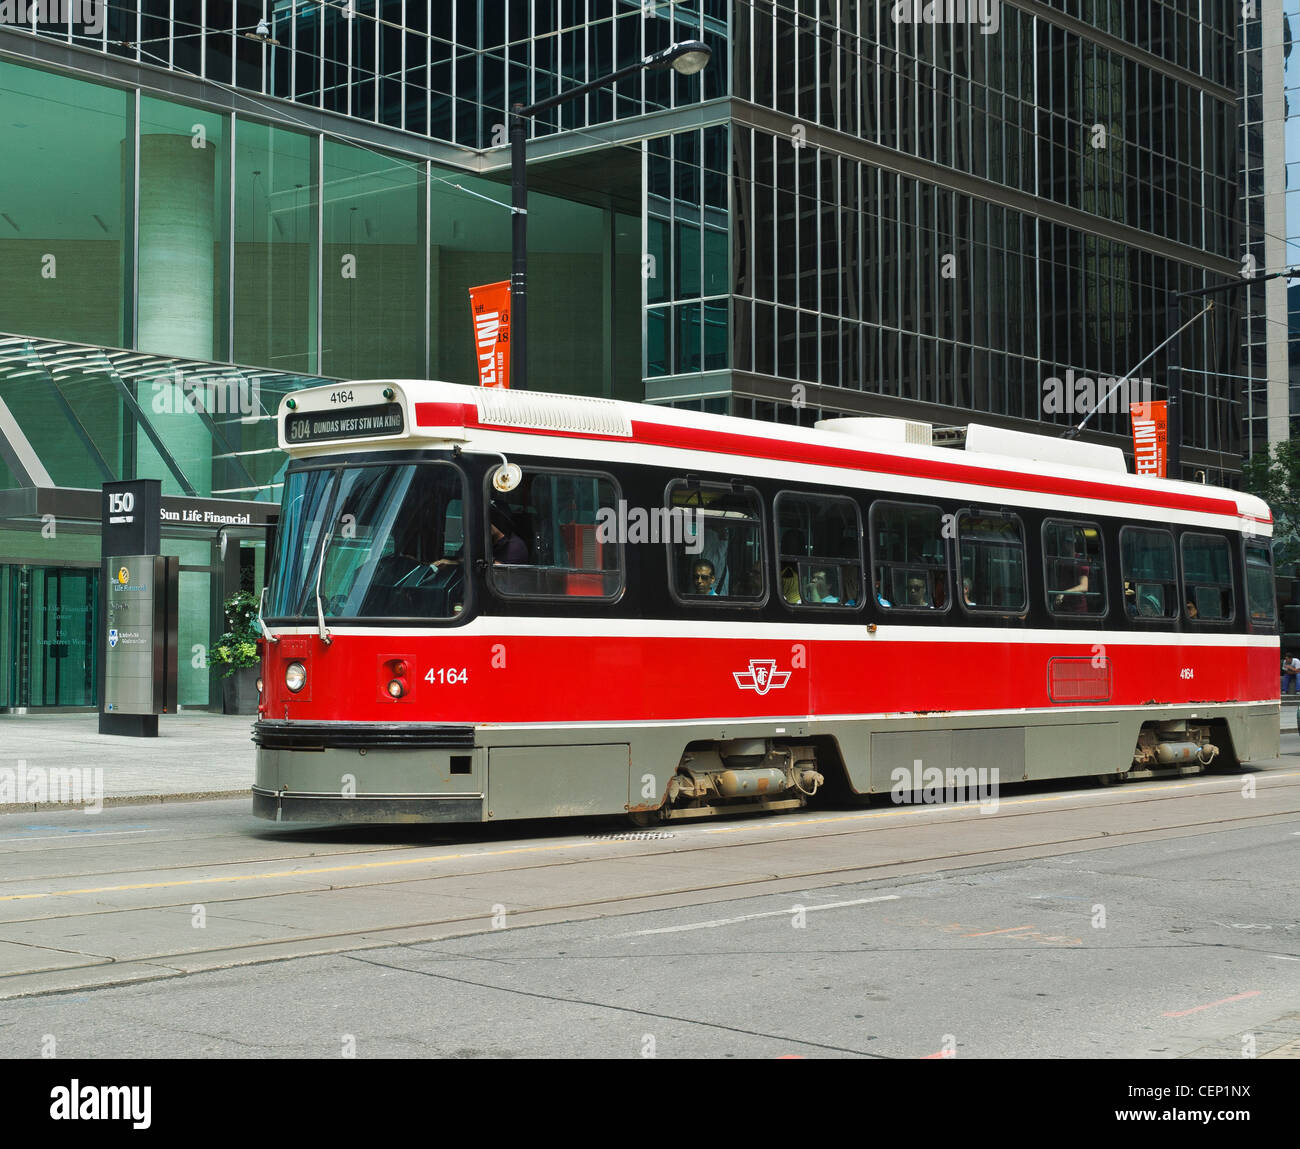 Tranvía de Toronto, conocida como la Red Rocket,Ontario, Canadá Foto de stock